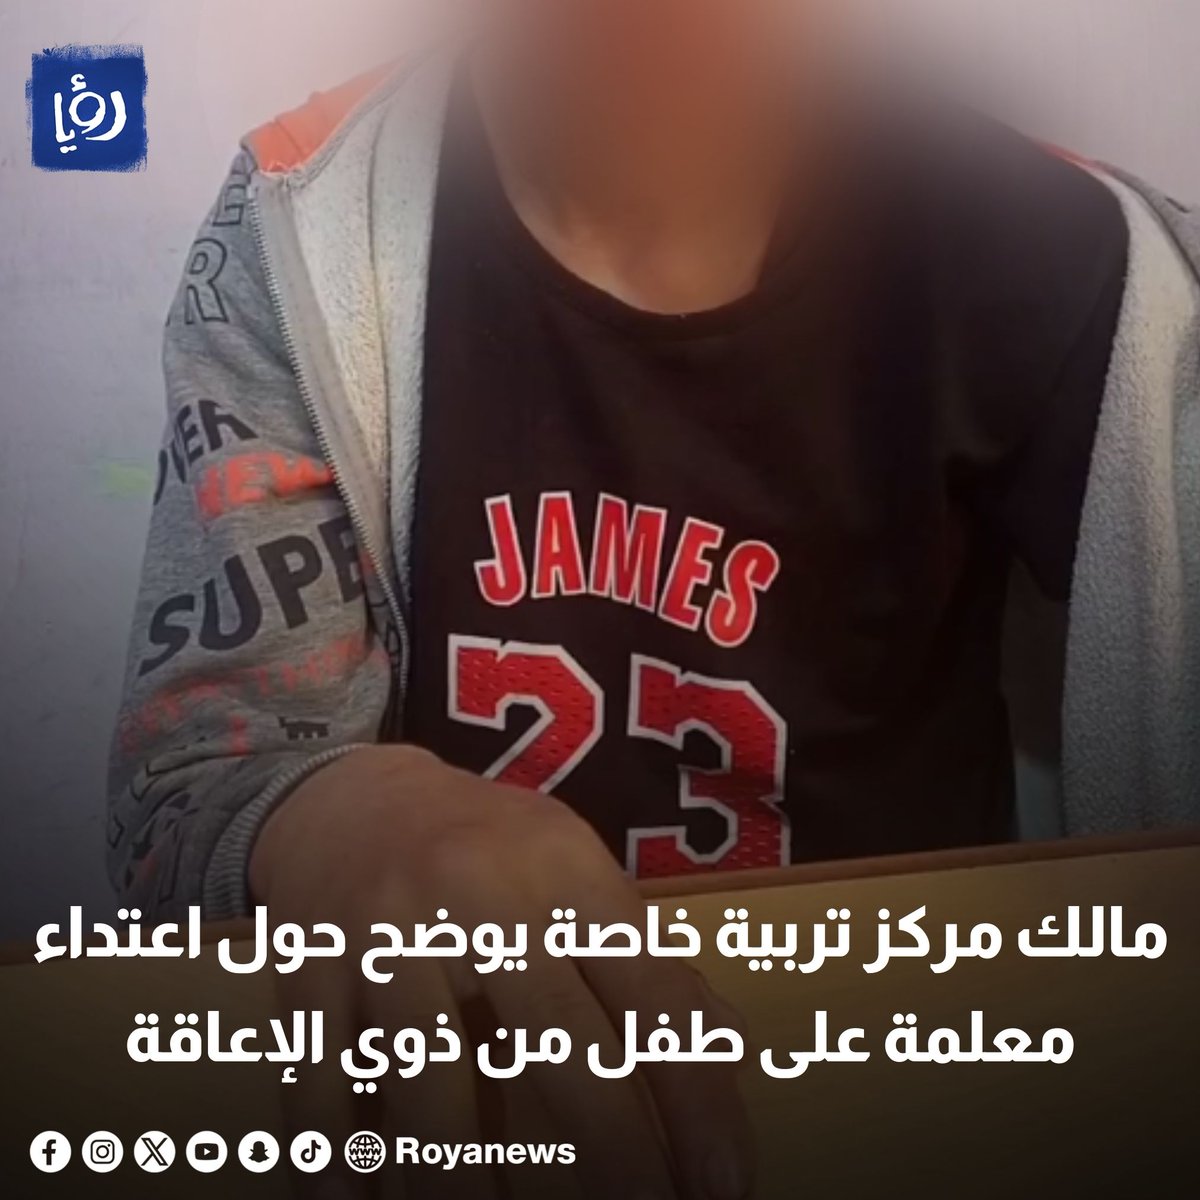 مالك مركز تربية خاصة يوضح حول اعتداء معلمة على طفل من ذوي الإعاقة royanews.tv/news/326448 #رؤيا_الإخباري #عاجل #الأردن #ذوي_الإعاقة